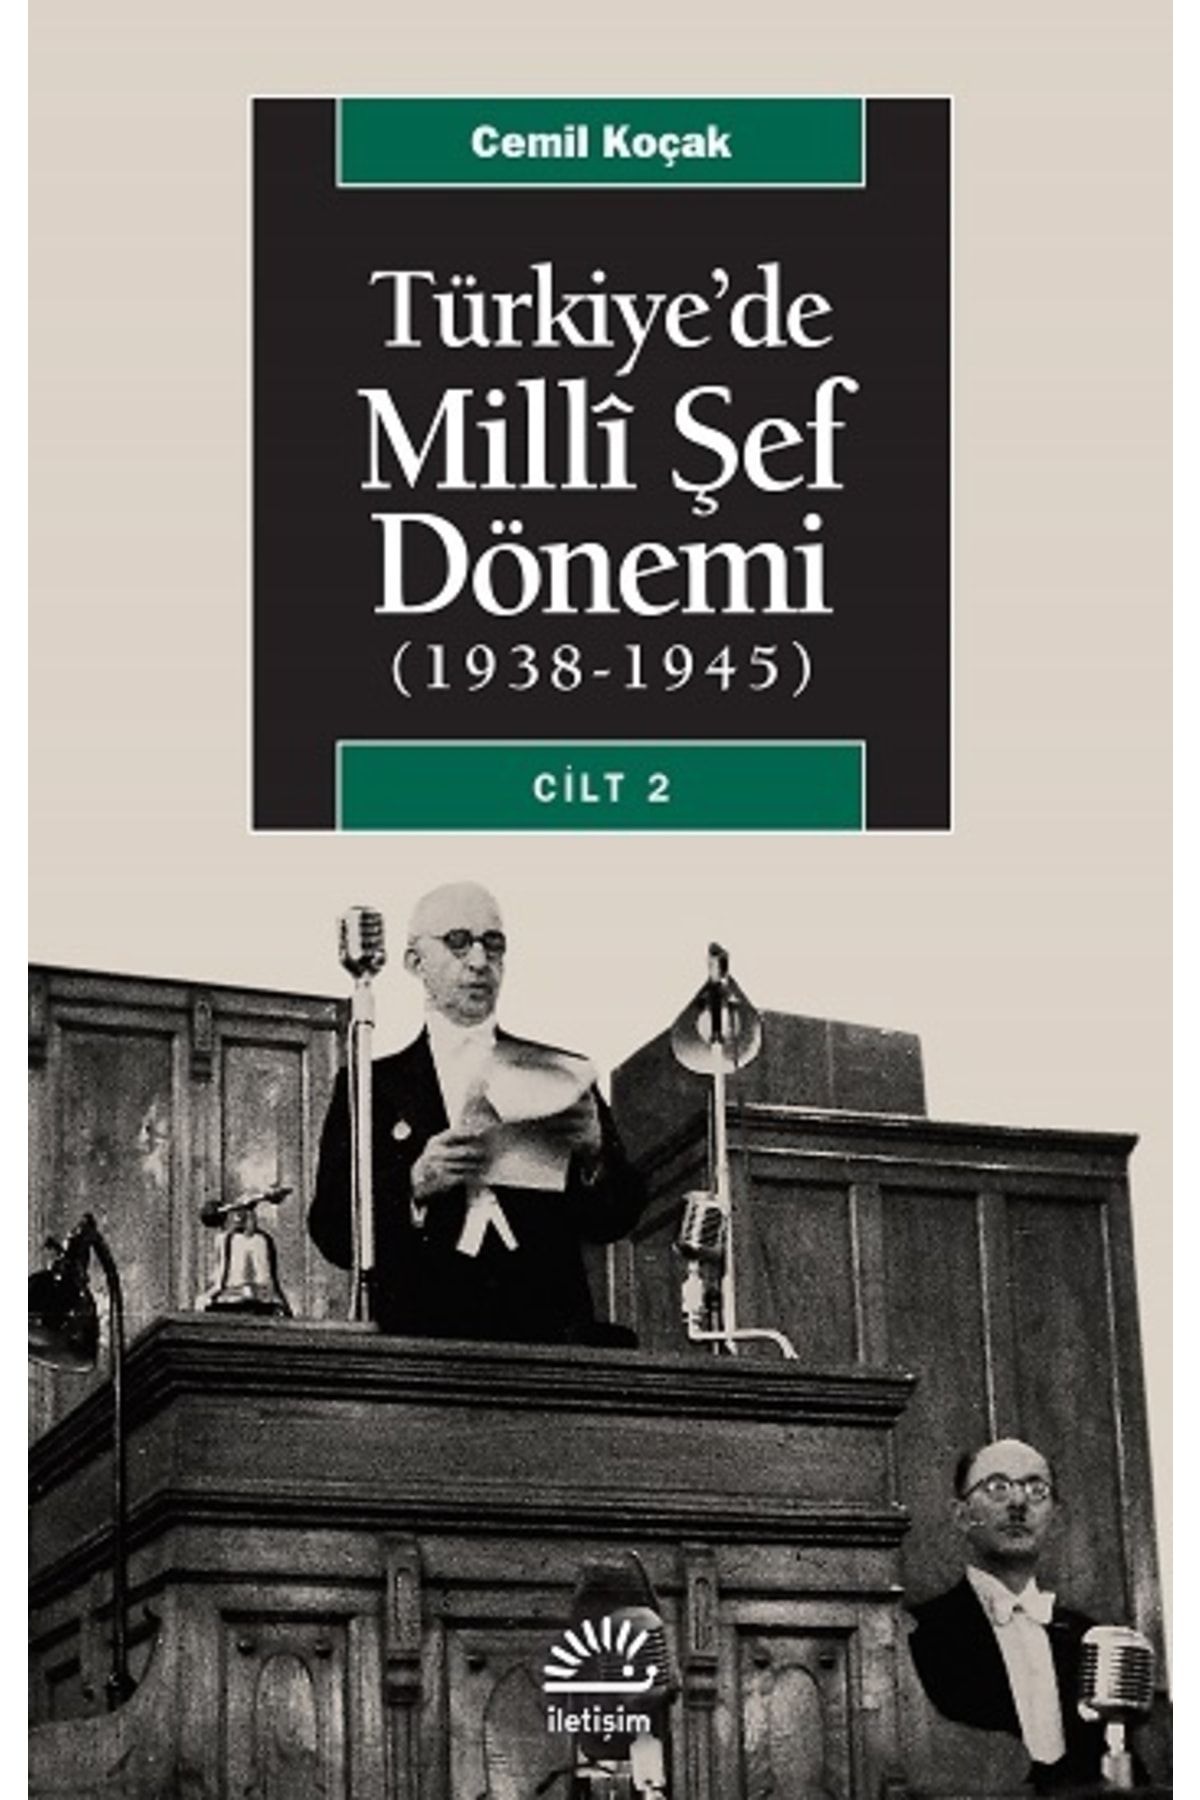 Genel Markalar Türkiye'de Milli Şef Dönemi Cilt 2, (1938-1945) - Cemil Koçak -